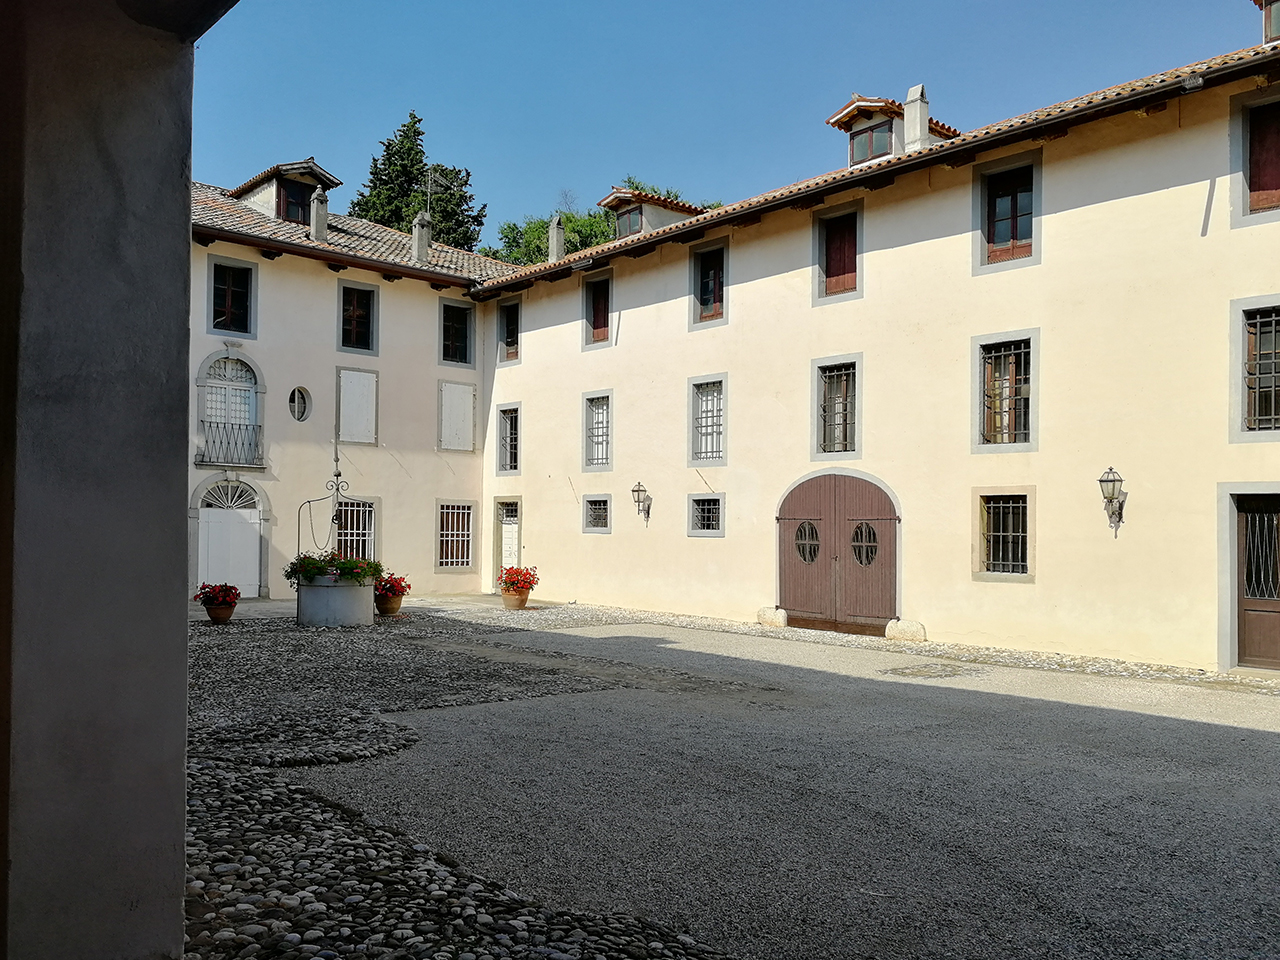 Villa Masotti (villa, privata) - Pozzuolo del Friuli (UD) 